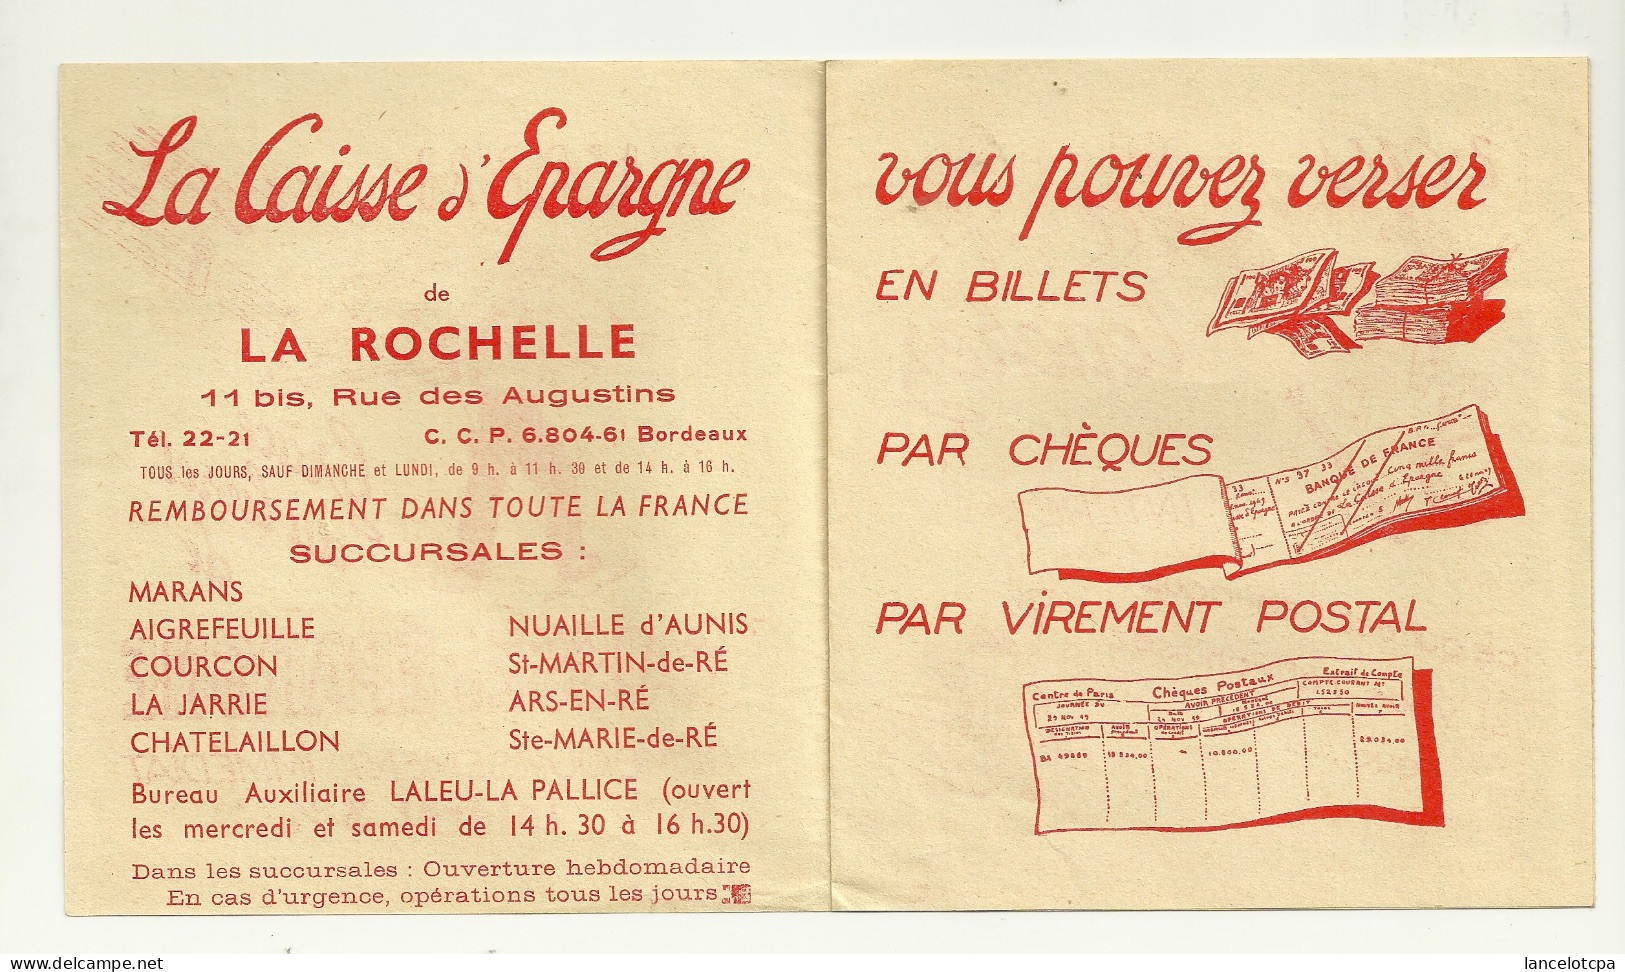 LIVRET PUBLICITE / LA CAISSE D'EPARGNE DE LA ROCHELLE - Publicités